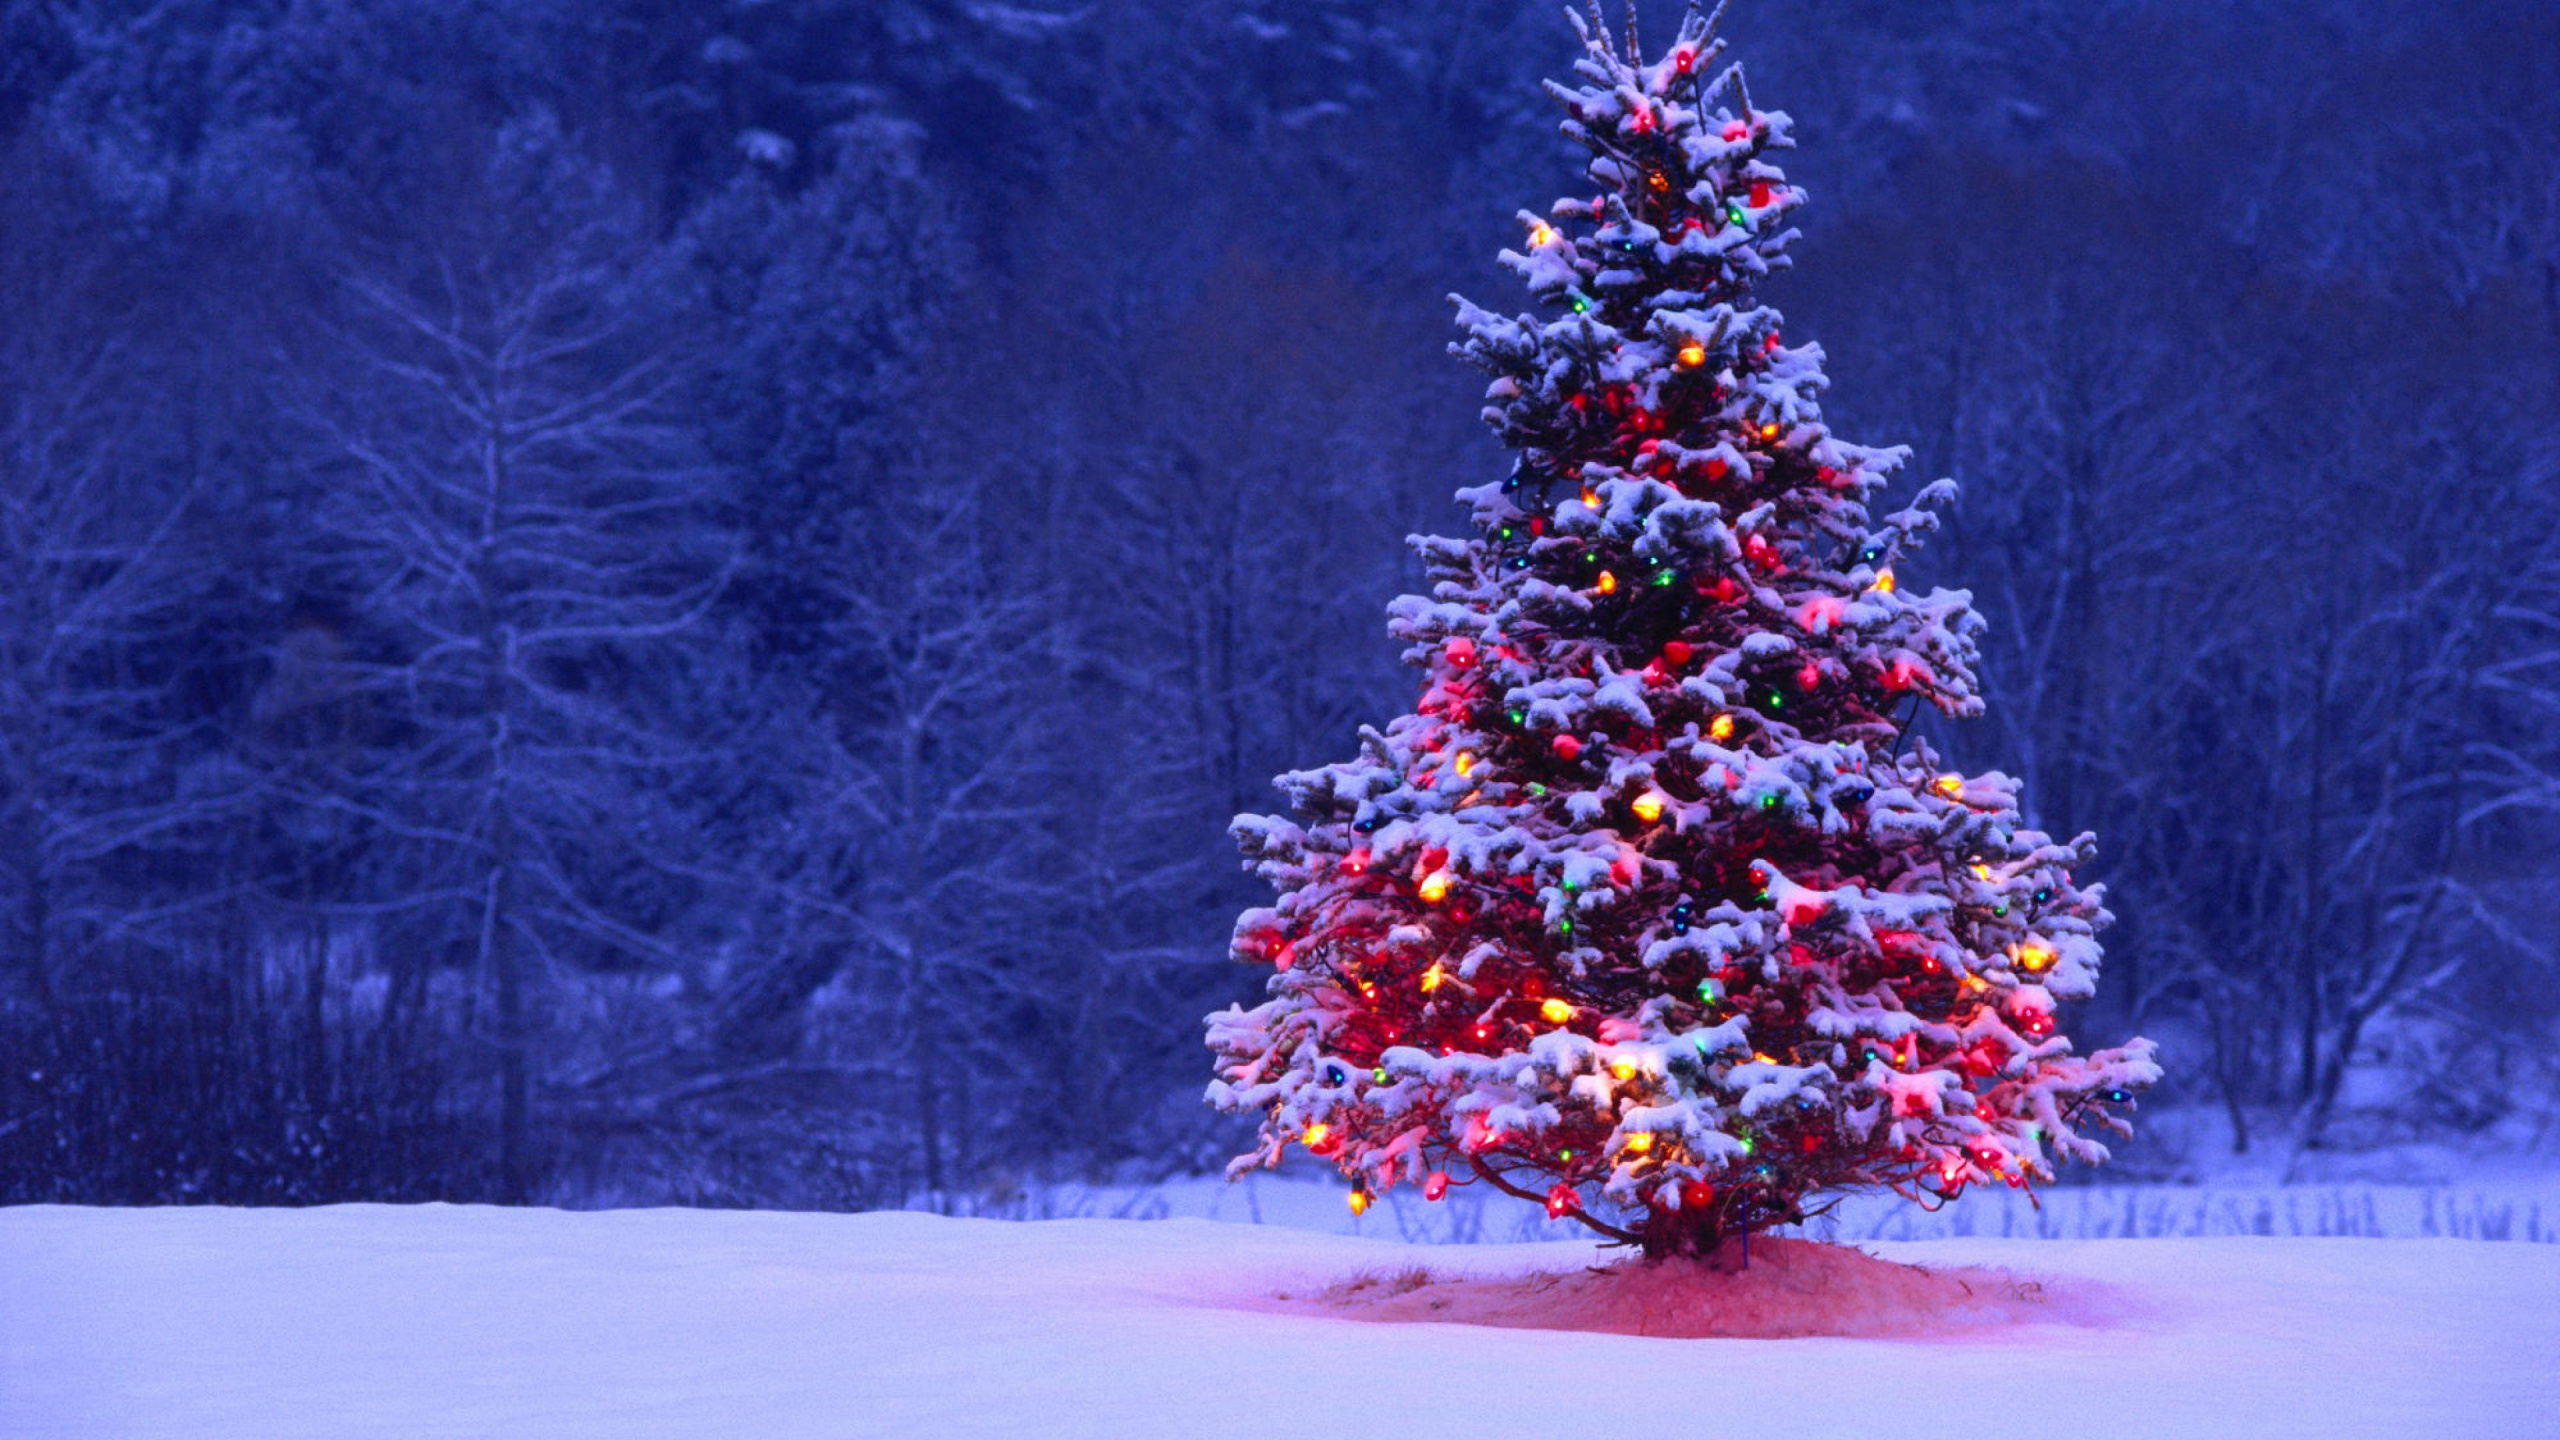 Weihnachten, Weihnachtsbaum, Weihnachtsdekoration, Winter, Baum. Wallpaper in 2560x1440 Resolution